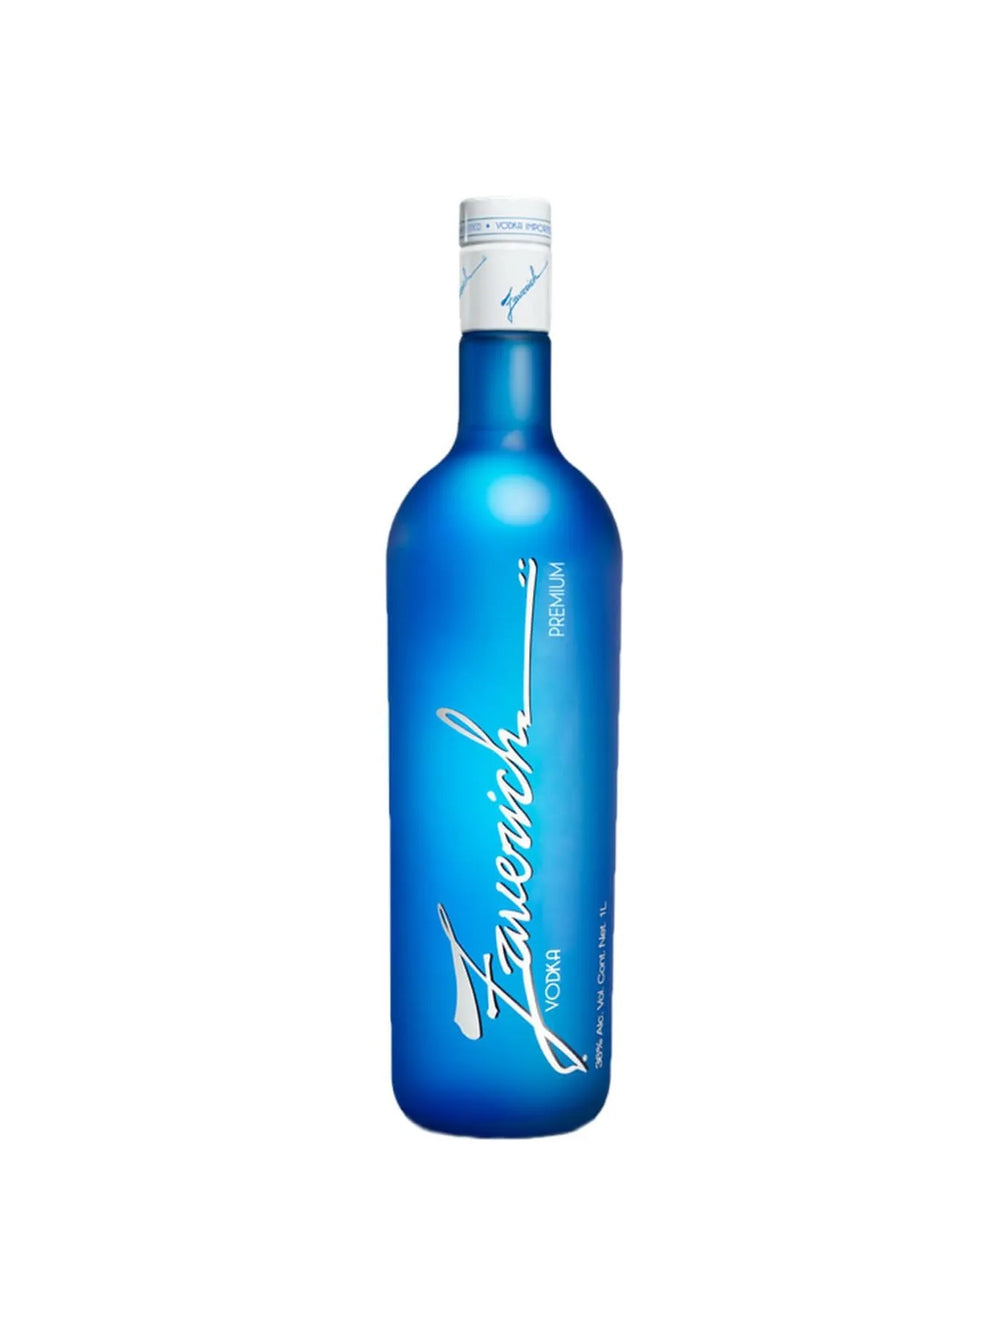 Vodka Zaverich Premium - 1 L